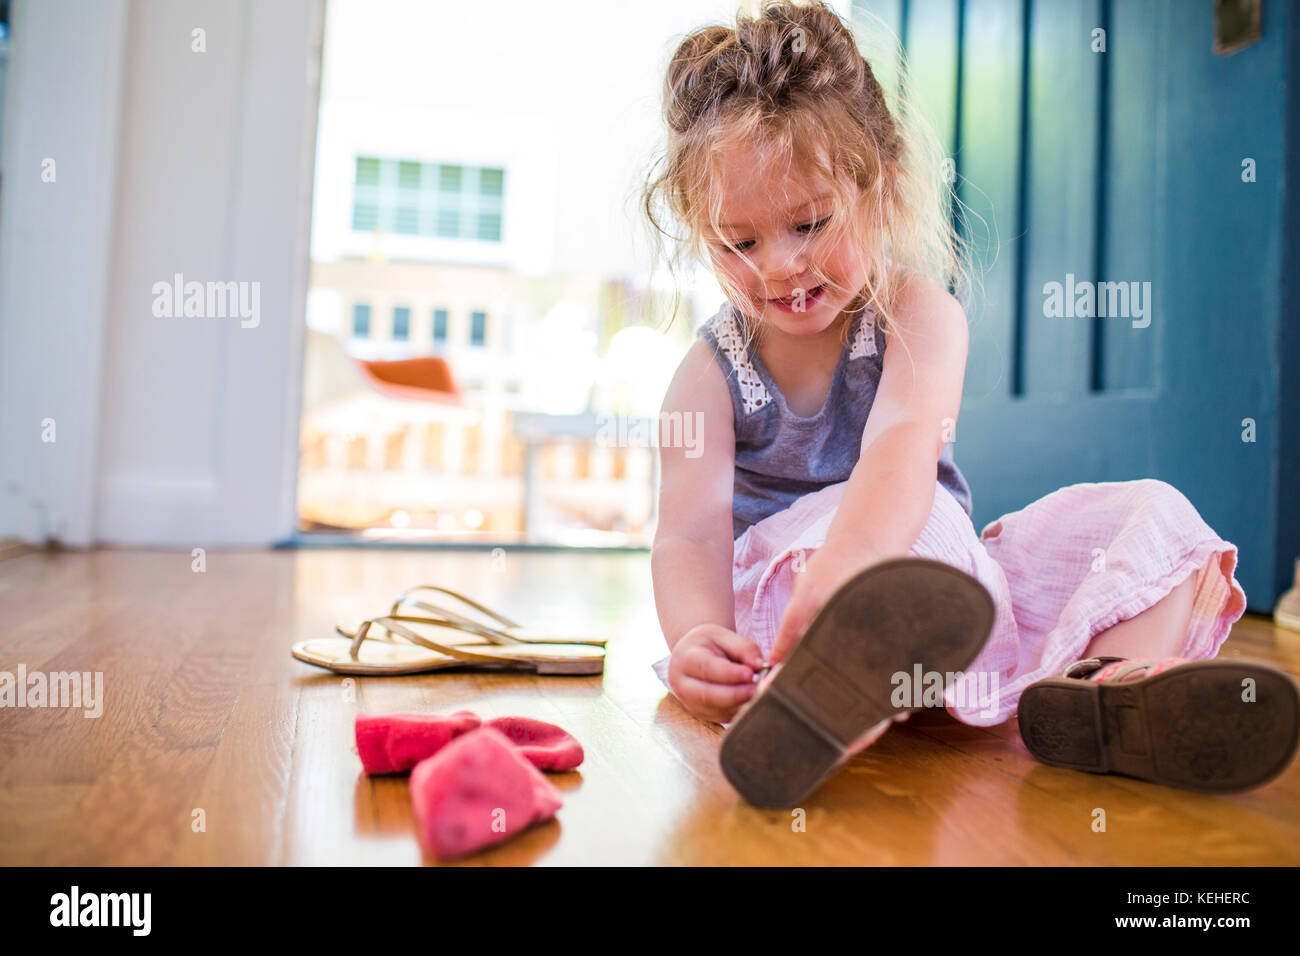 Chica caucásica sentada en el suelo que sujeta la sandalia Foto de stock